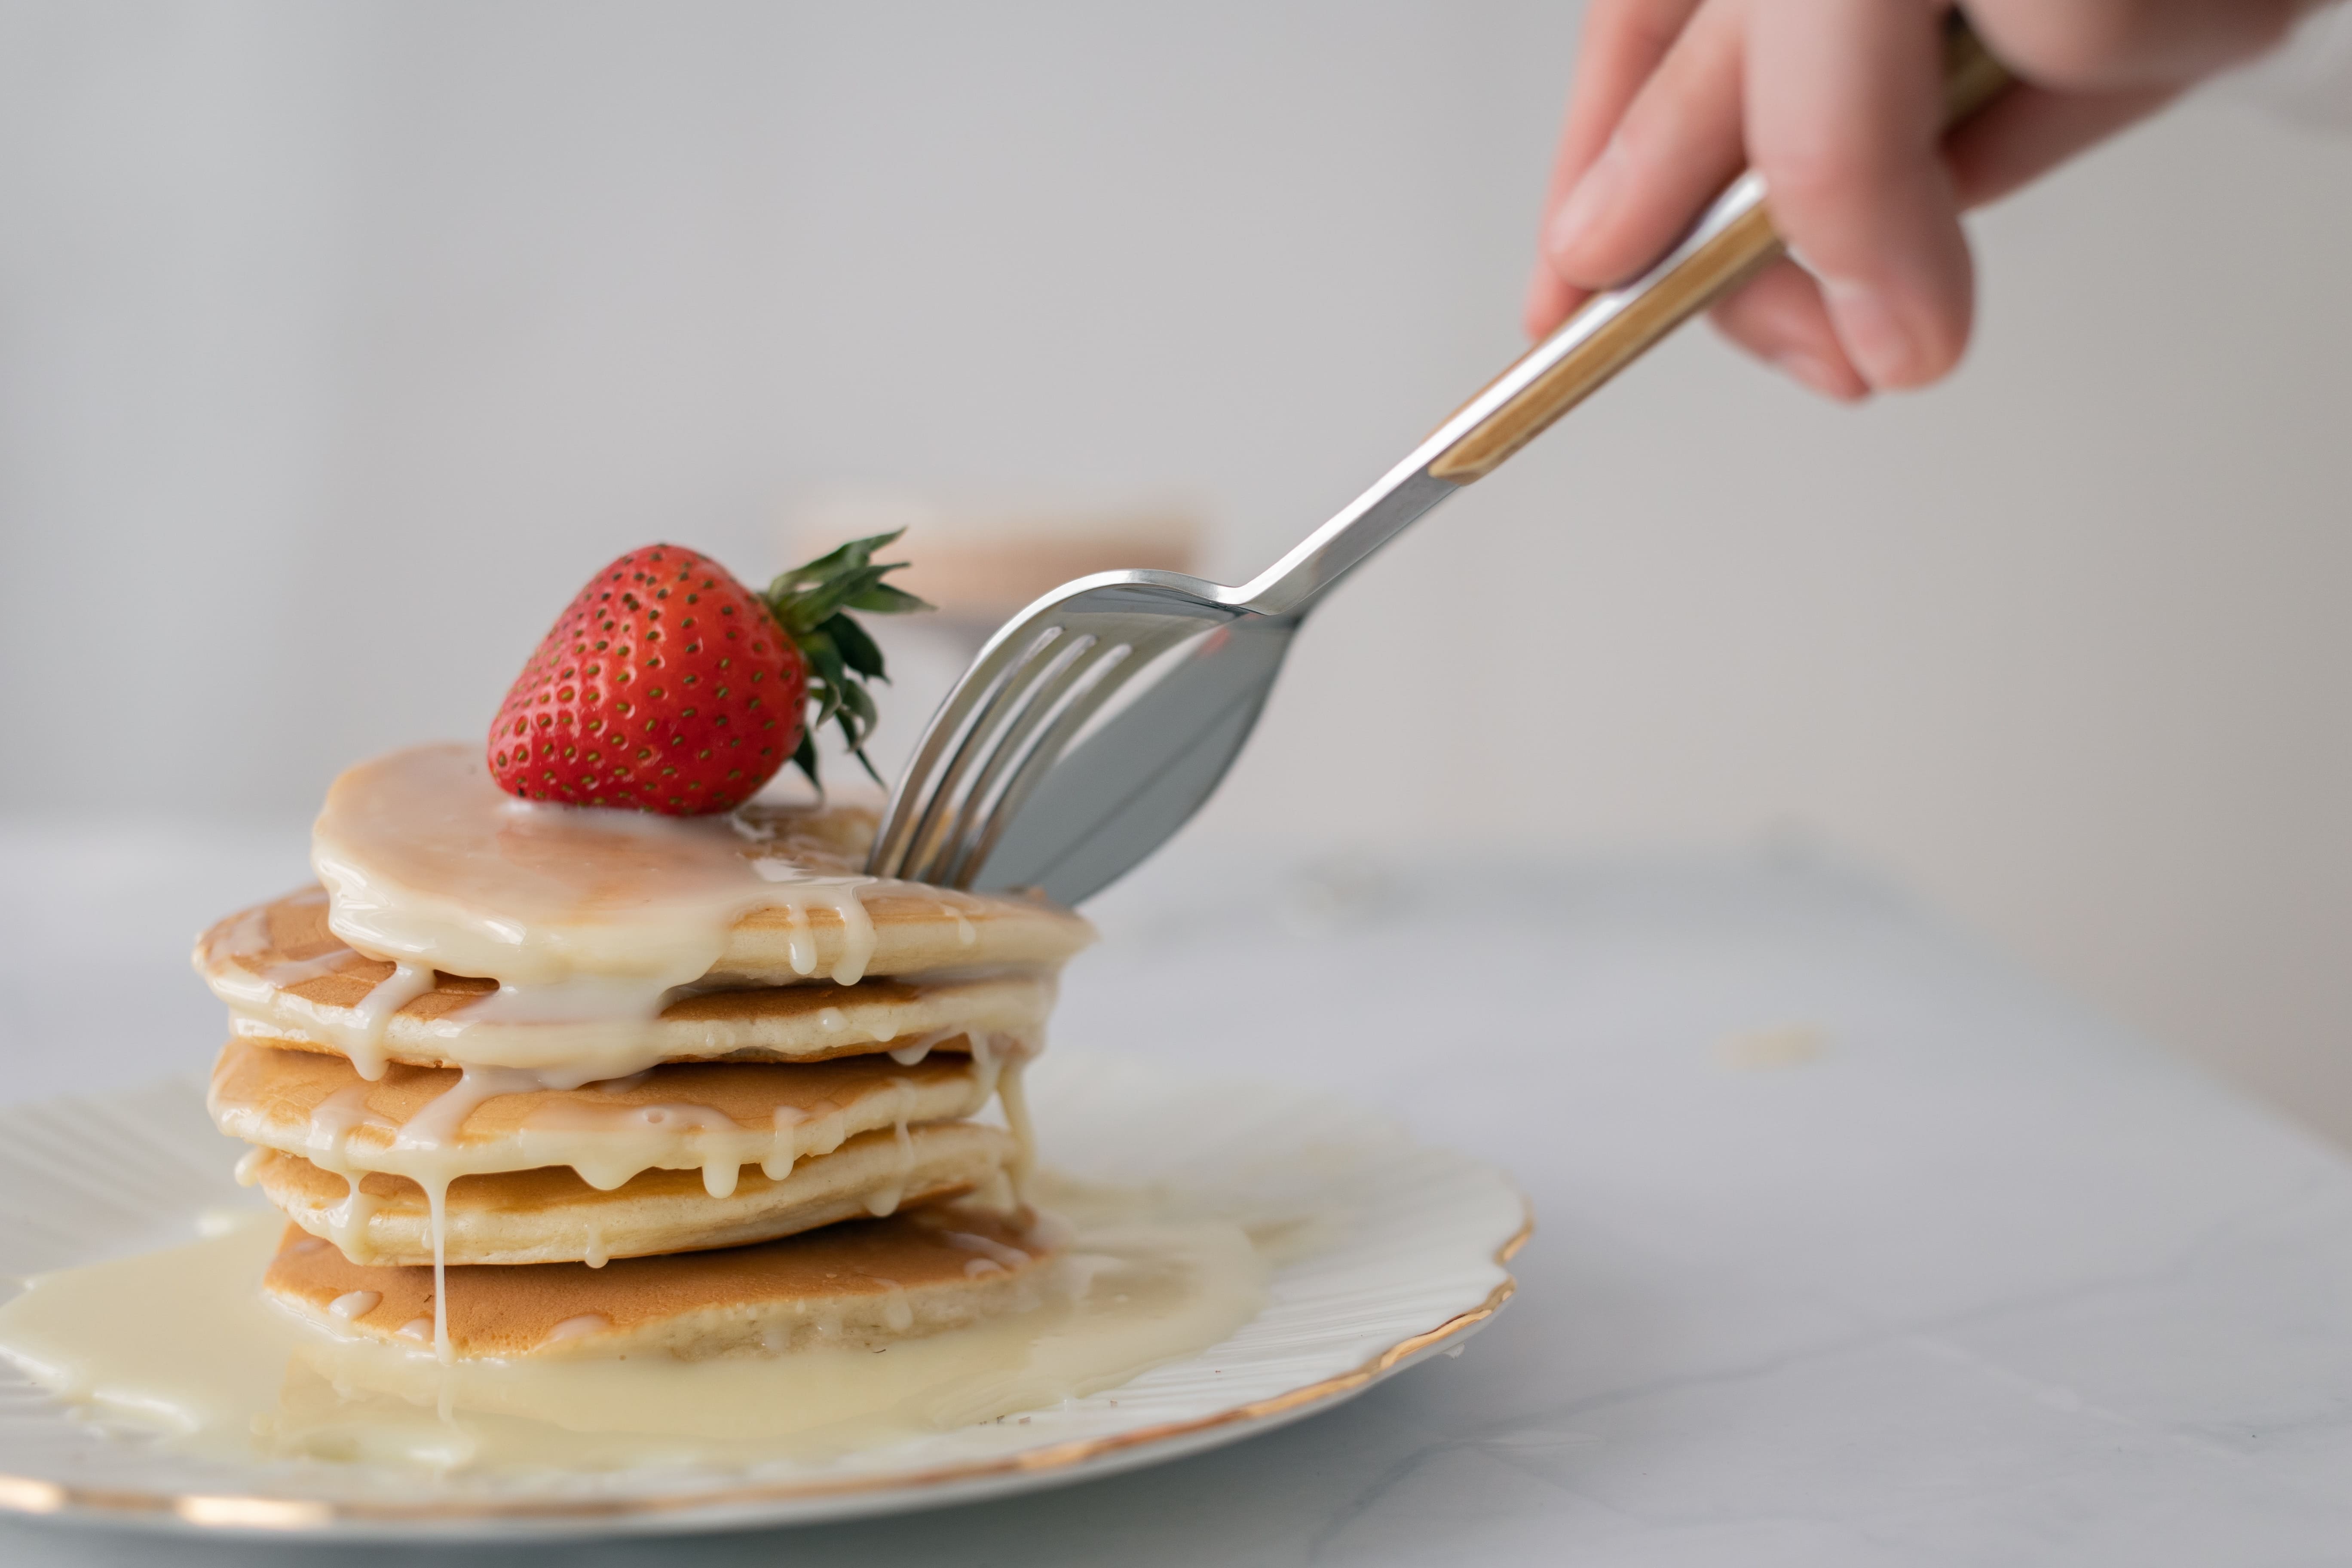 Kental manis sebagai topping pancake | Foto: Monstera/pexels.com